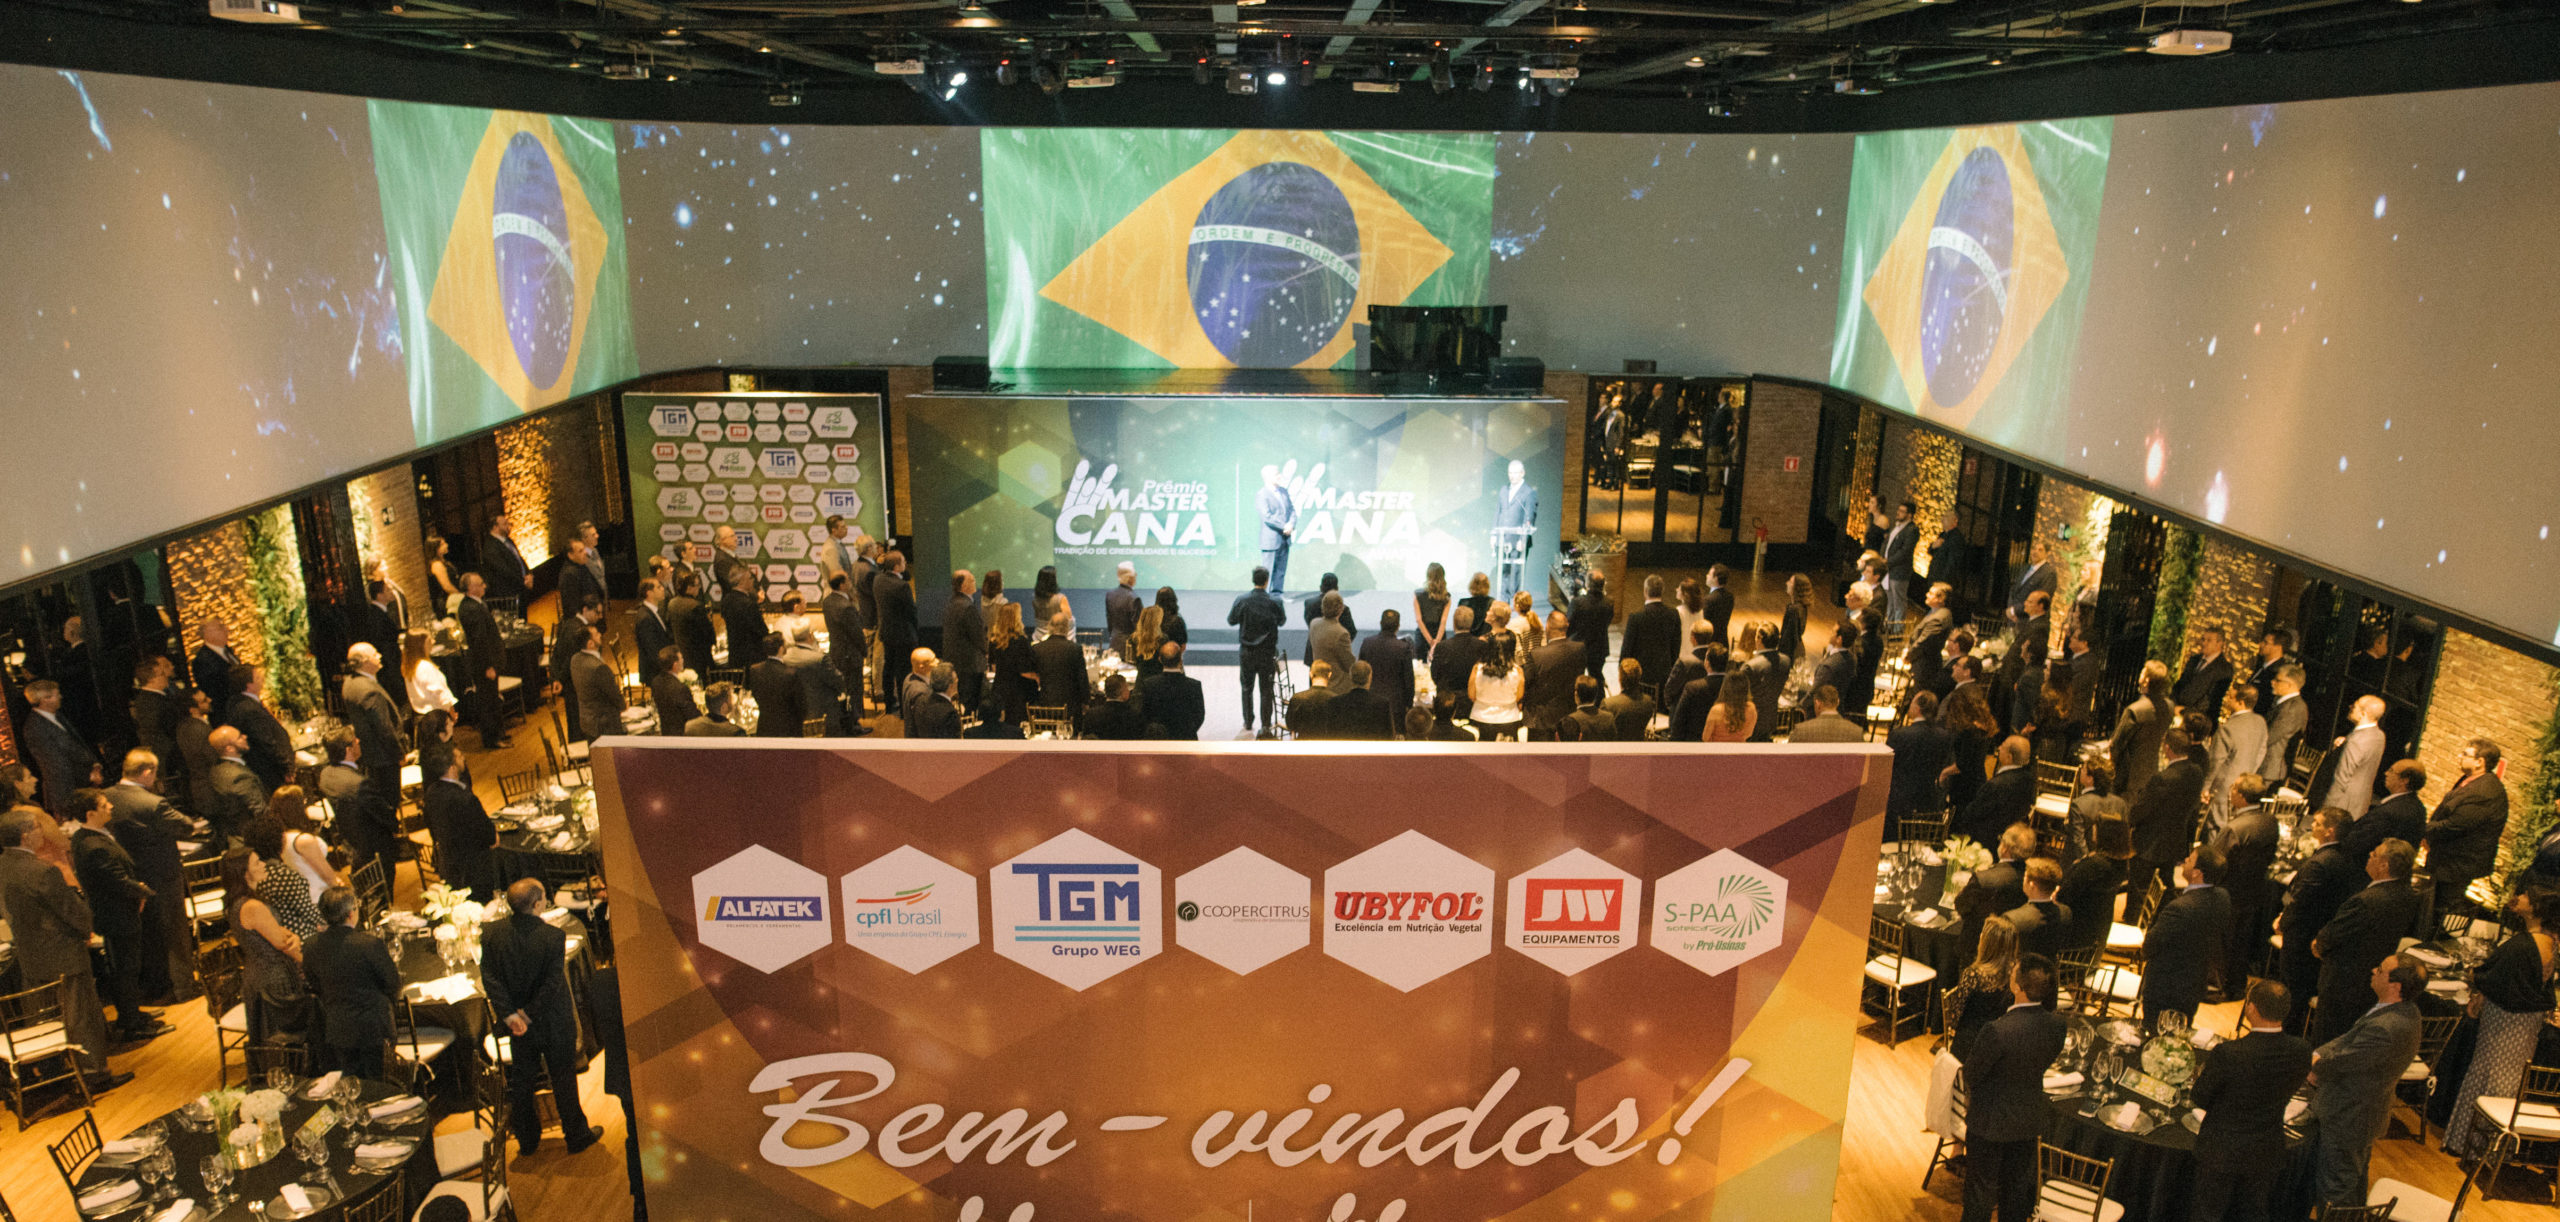 Principais grupos e usinas participam de premiação internacional em São Paulo